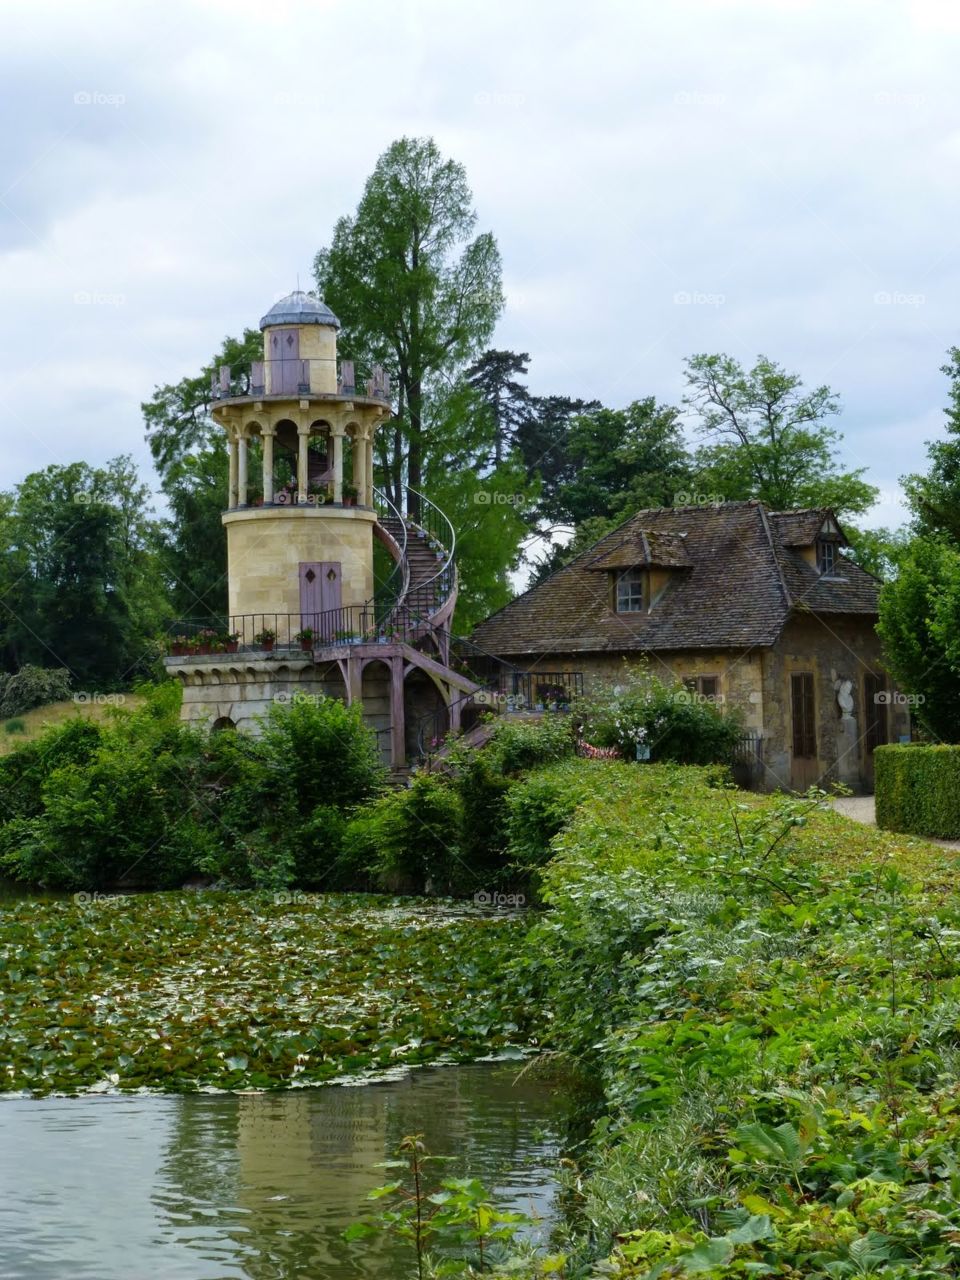 Marie Antoinette's Little Hamlet
Versailles, France